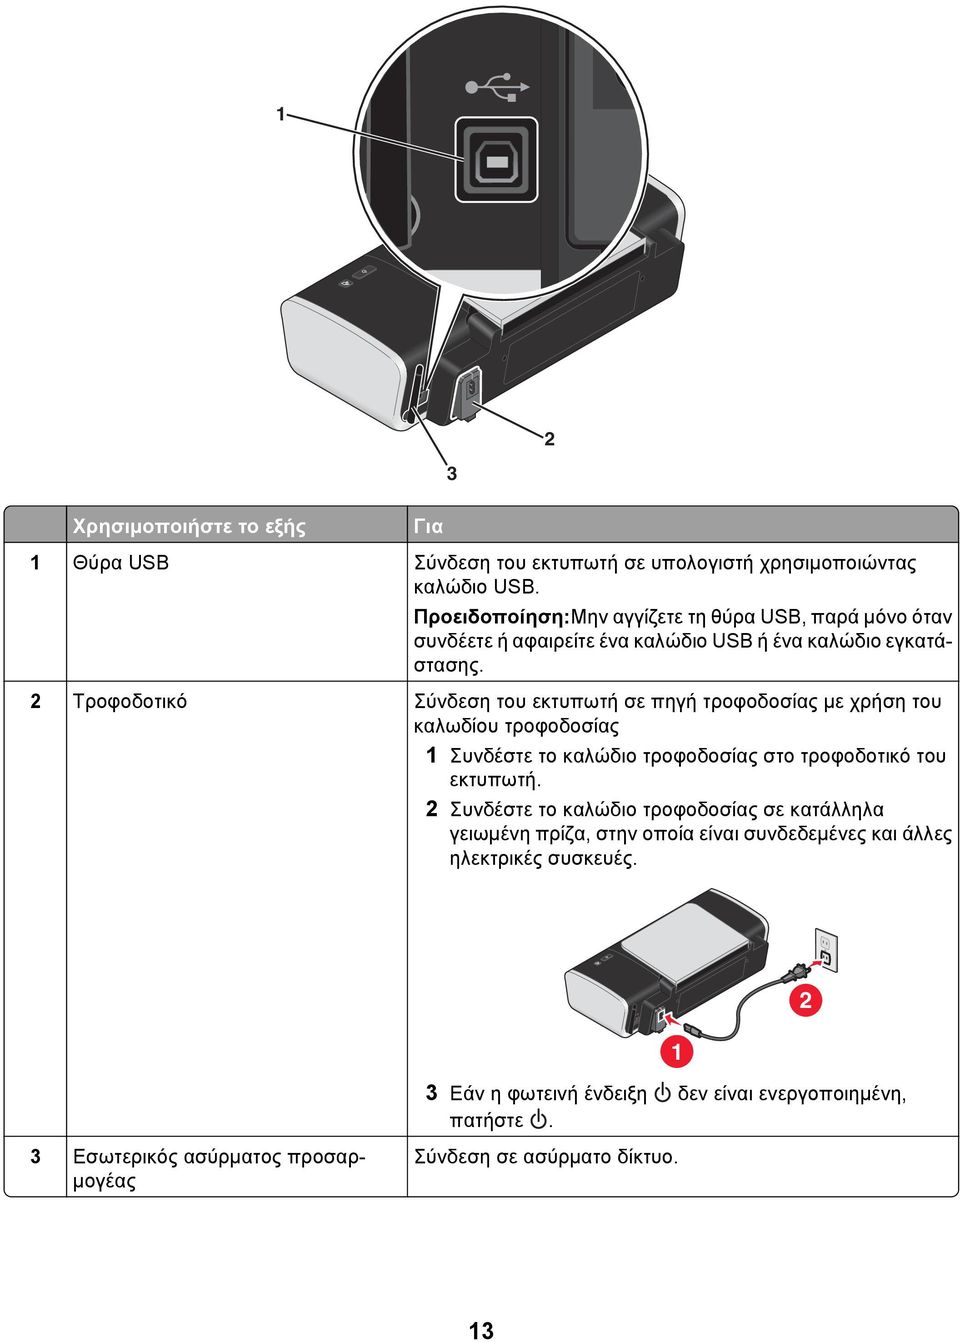 2 Τροφοδοτικό Σύνδεση του εκτυπωτή σε πηγή τροφοδοσίας με χρήση του καλωδίου τροφοδοσίας 1 Συνδέστε το καλώδιο τροφοδοσίας στο τροφοδοτικό του εκτυπωτή.